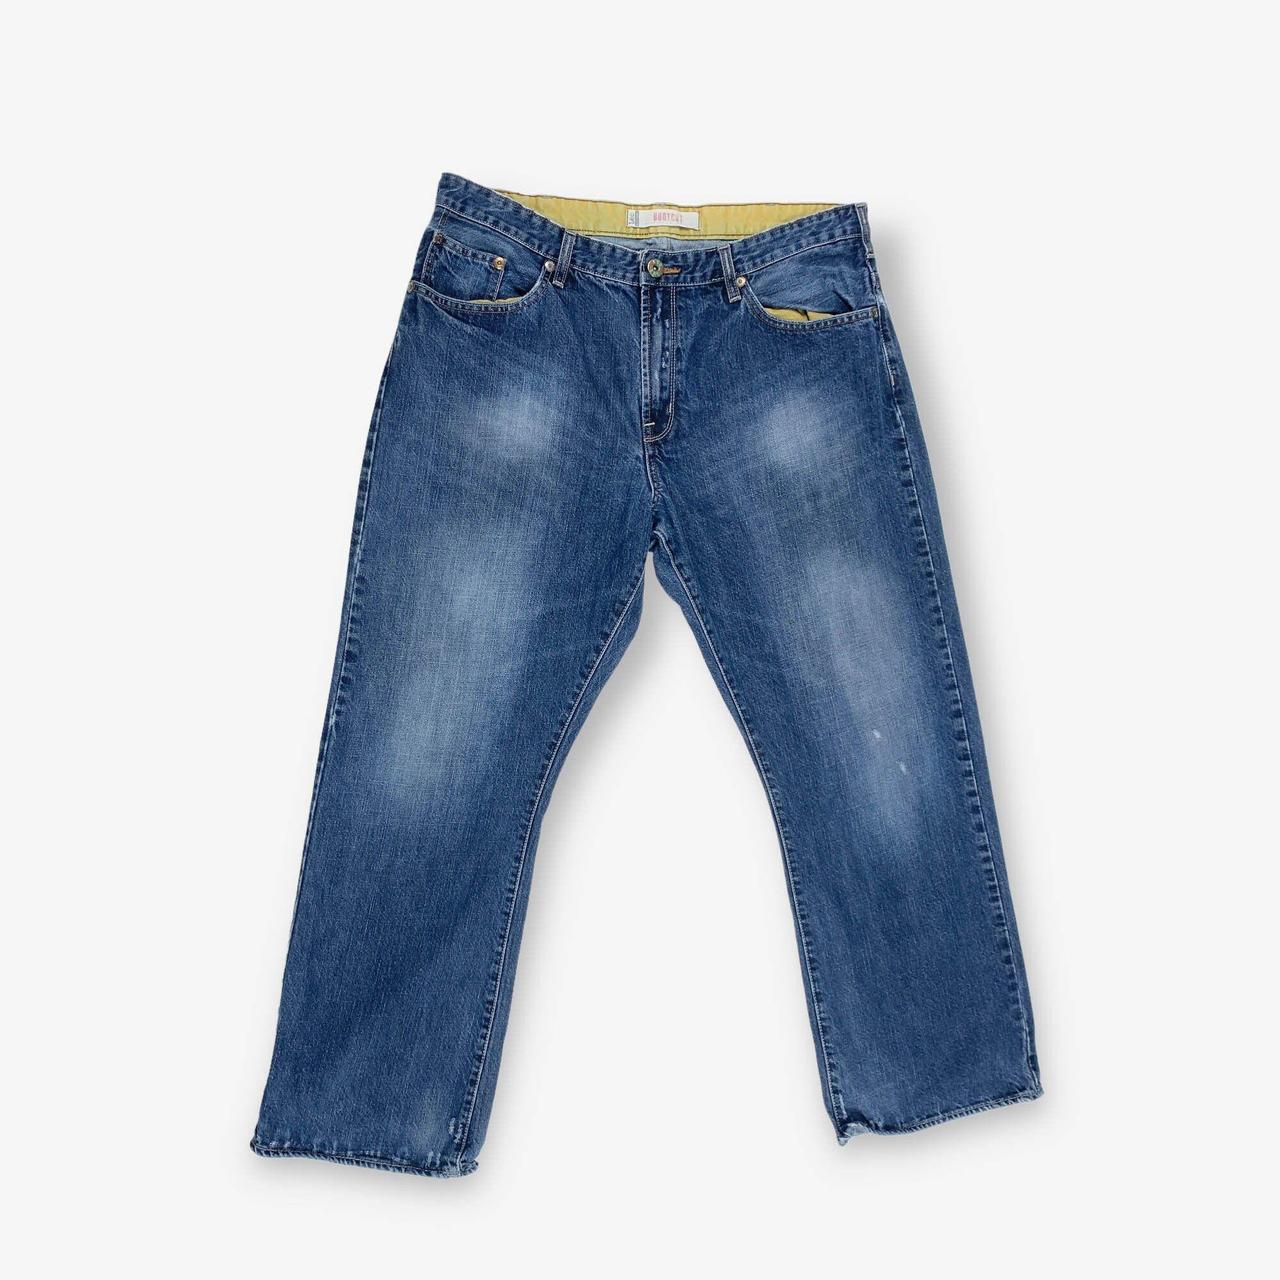 BV16803 Vintage Lee bootcut jeans in dark blue... - Depop